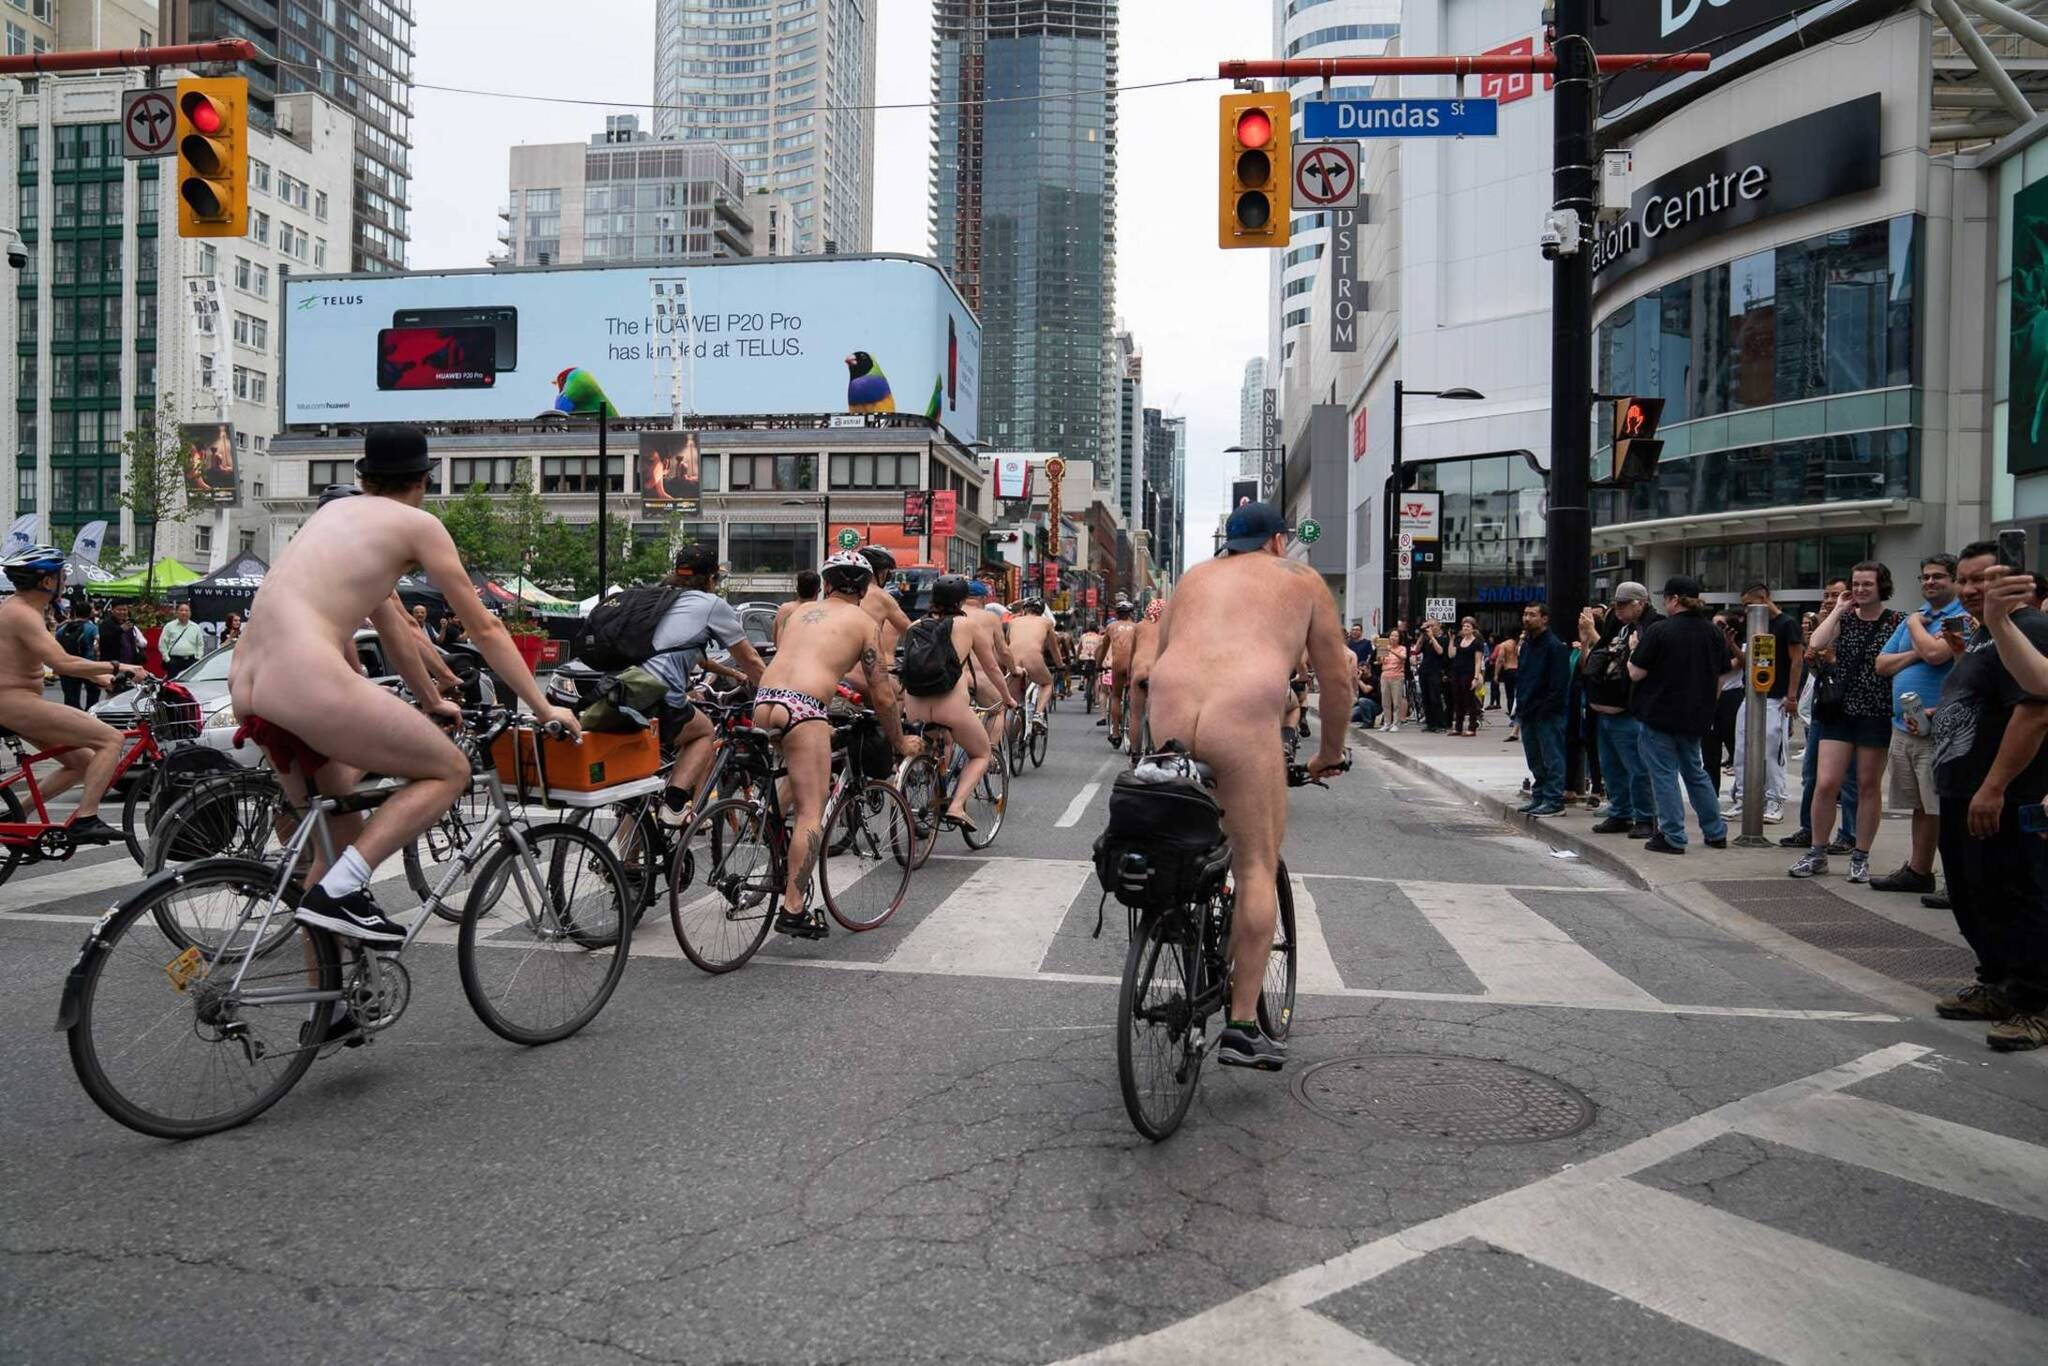 Model non nude in Toronto